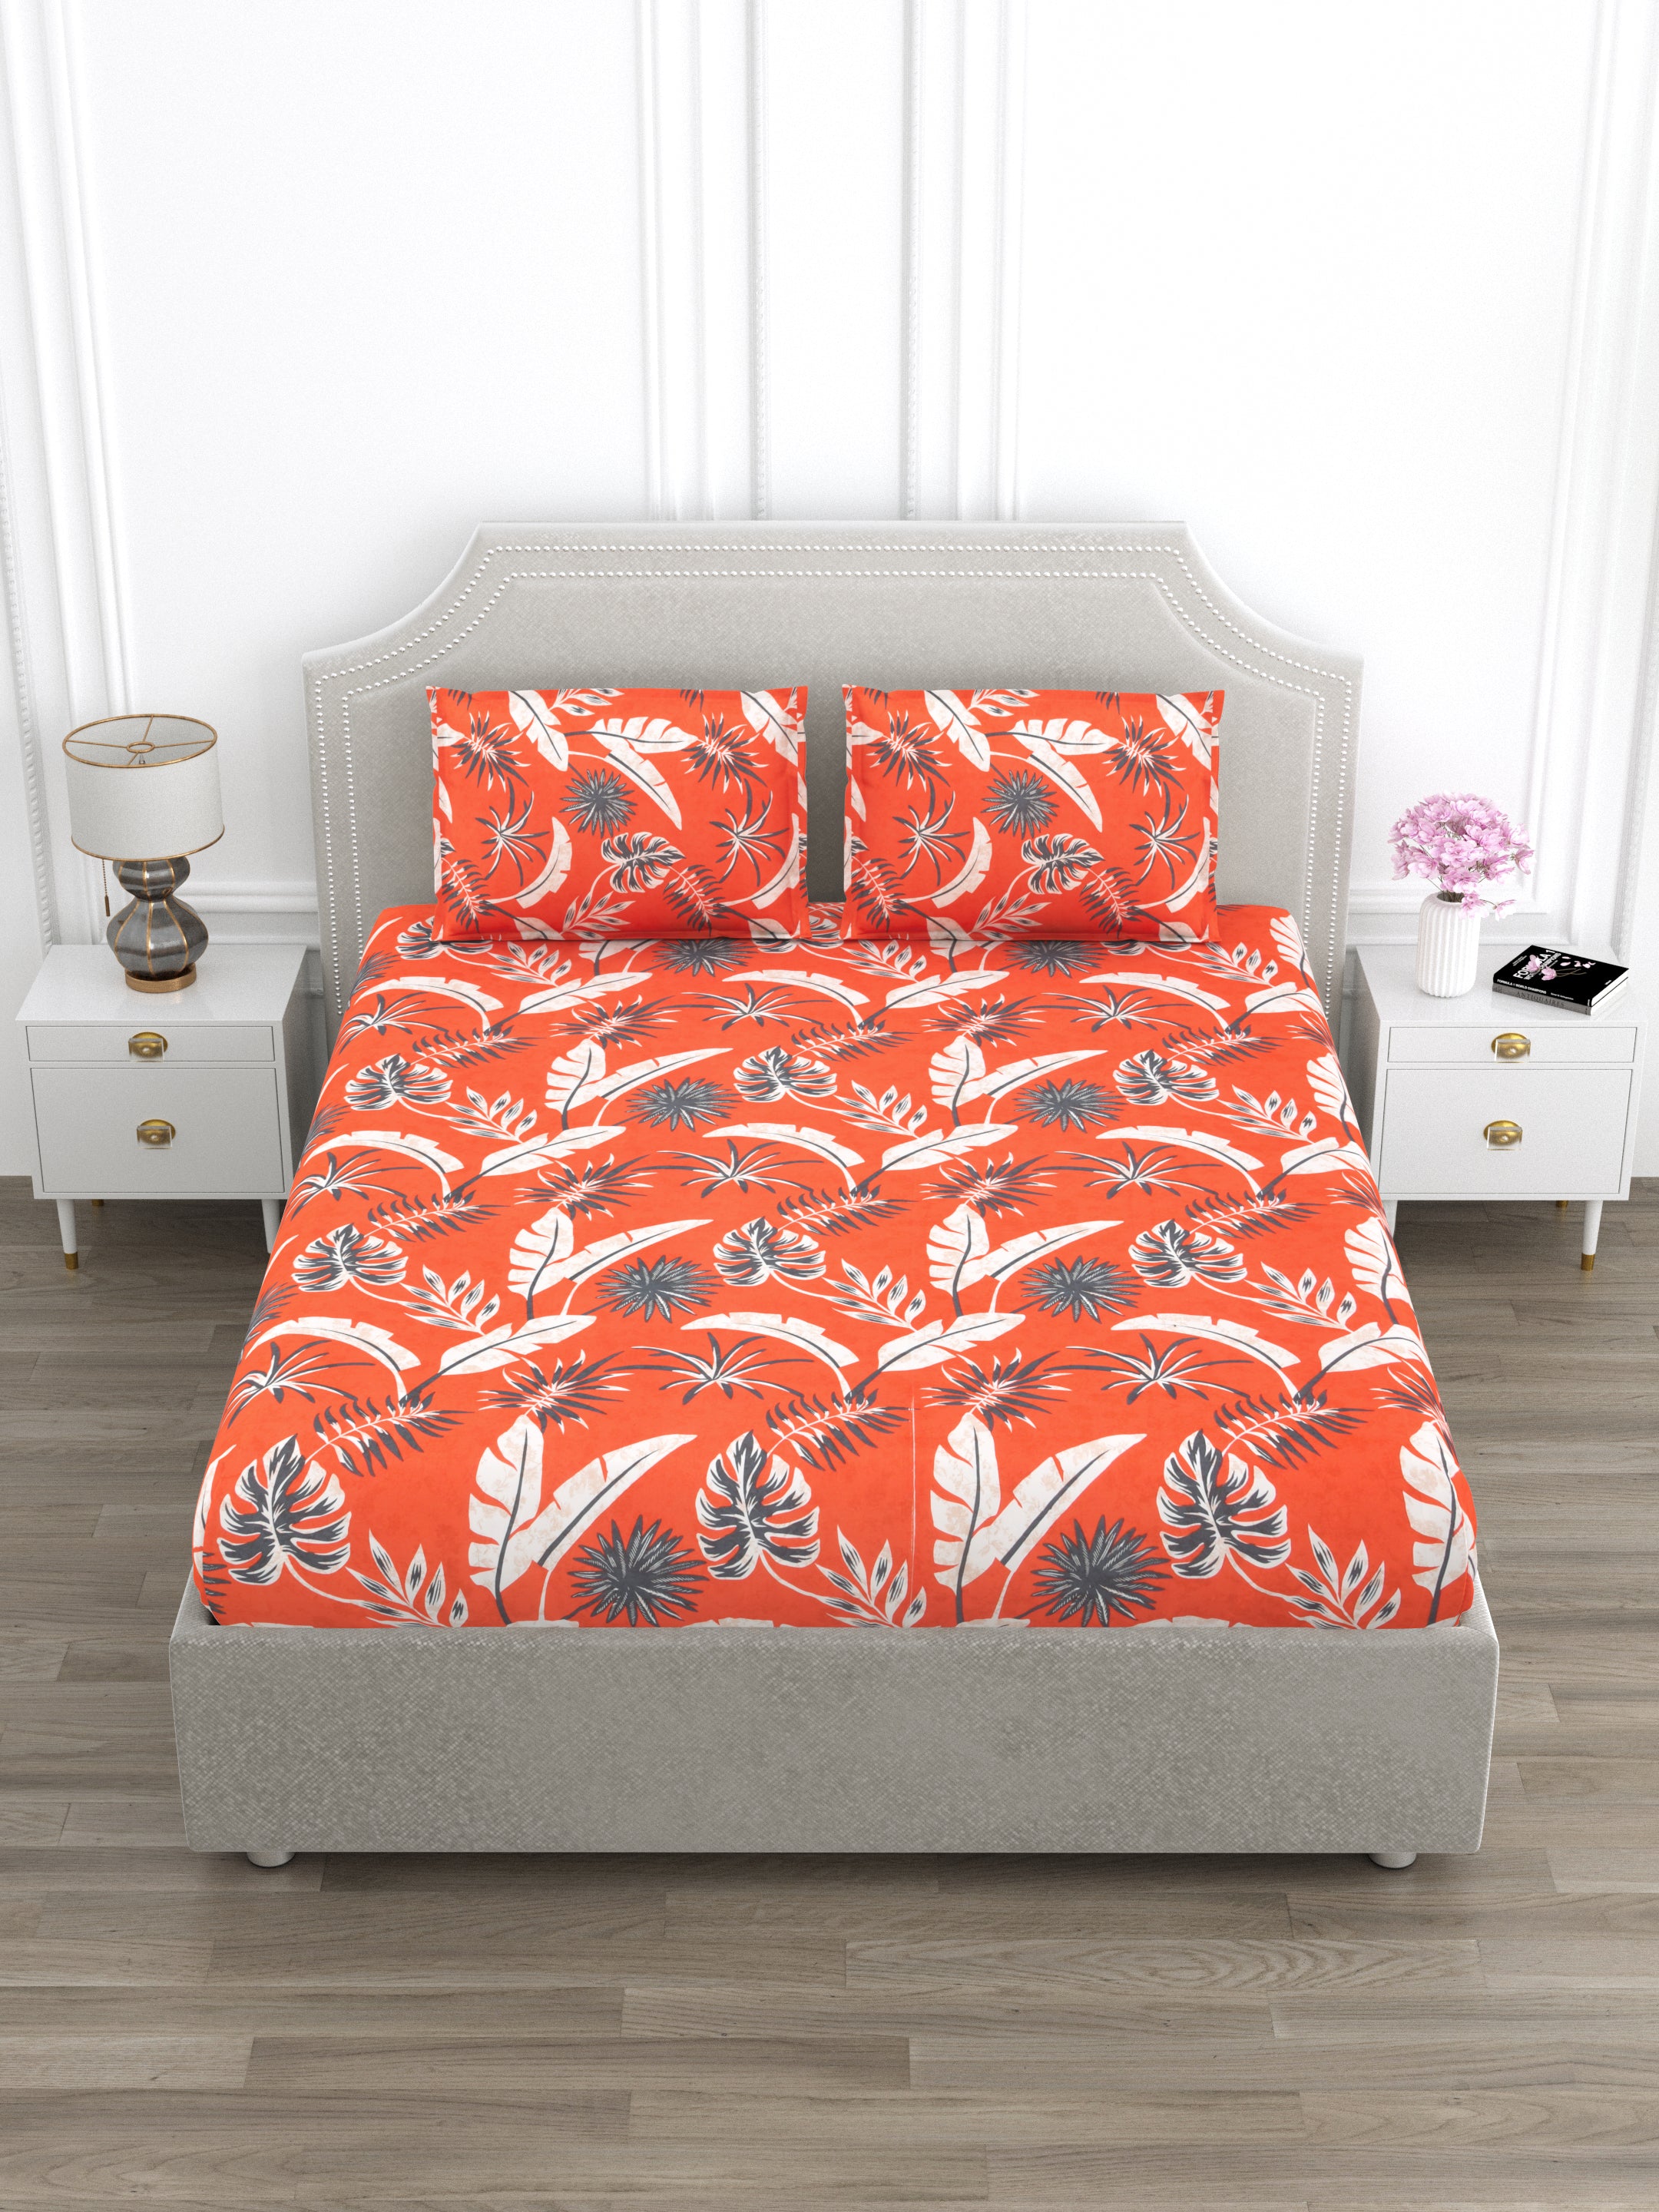 Orange and Grey Floral Super King Size Cotton Bedsheet